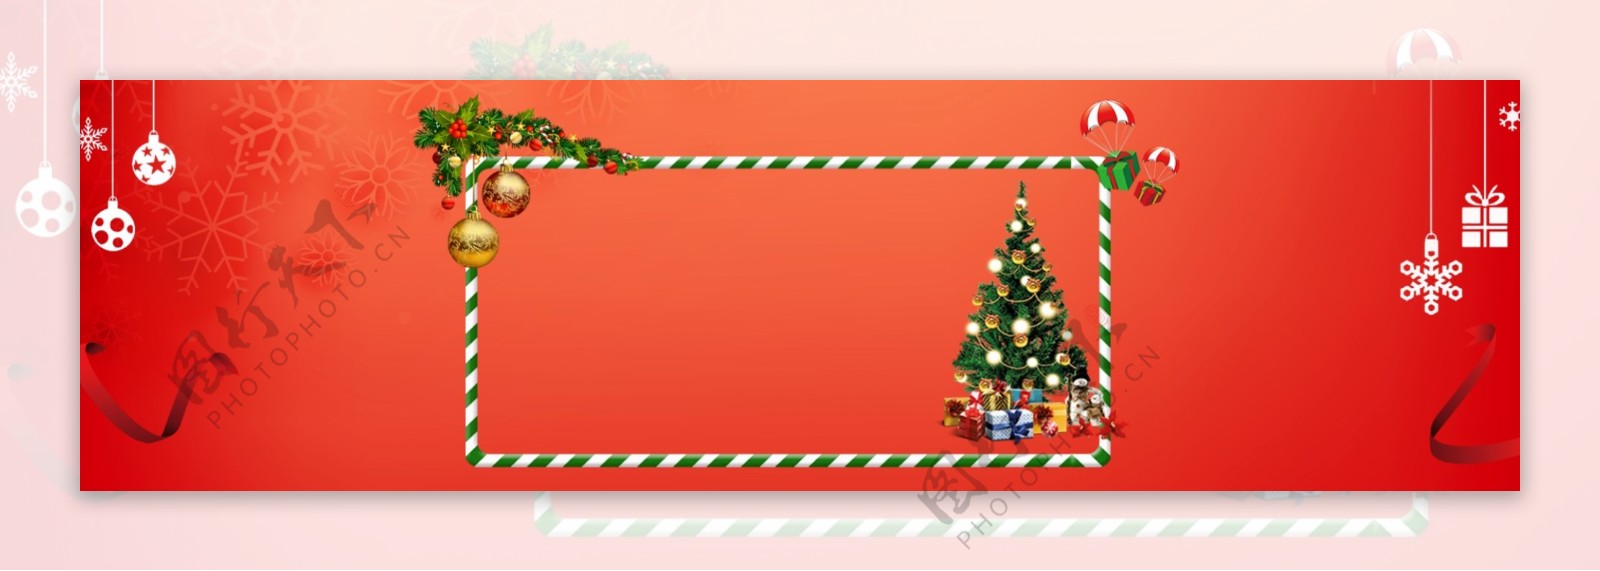 圣诞帽子圣诞节浪漫banner背景